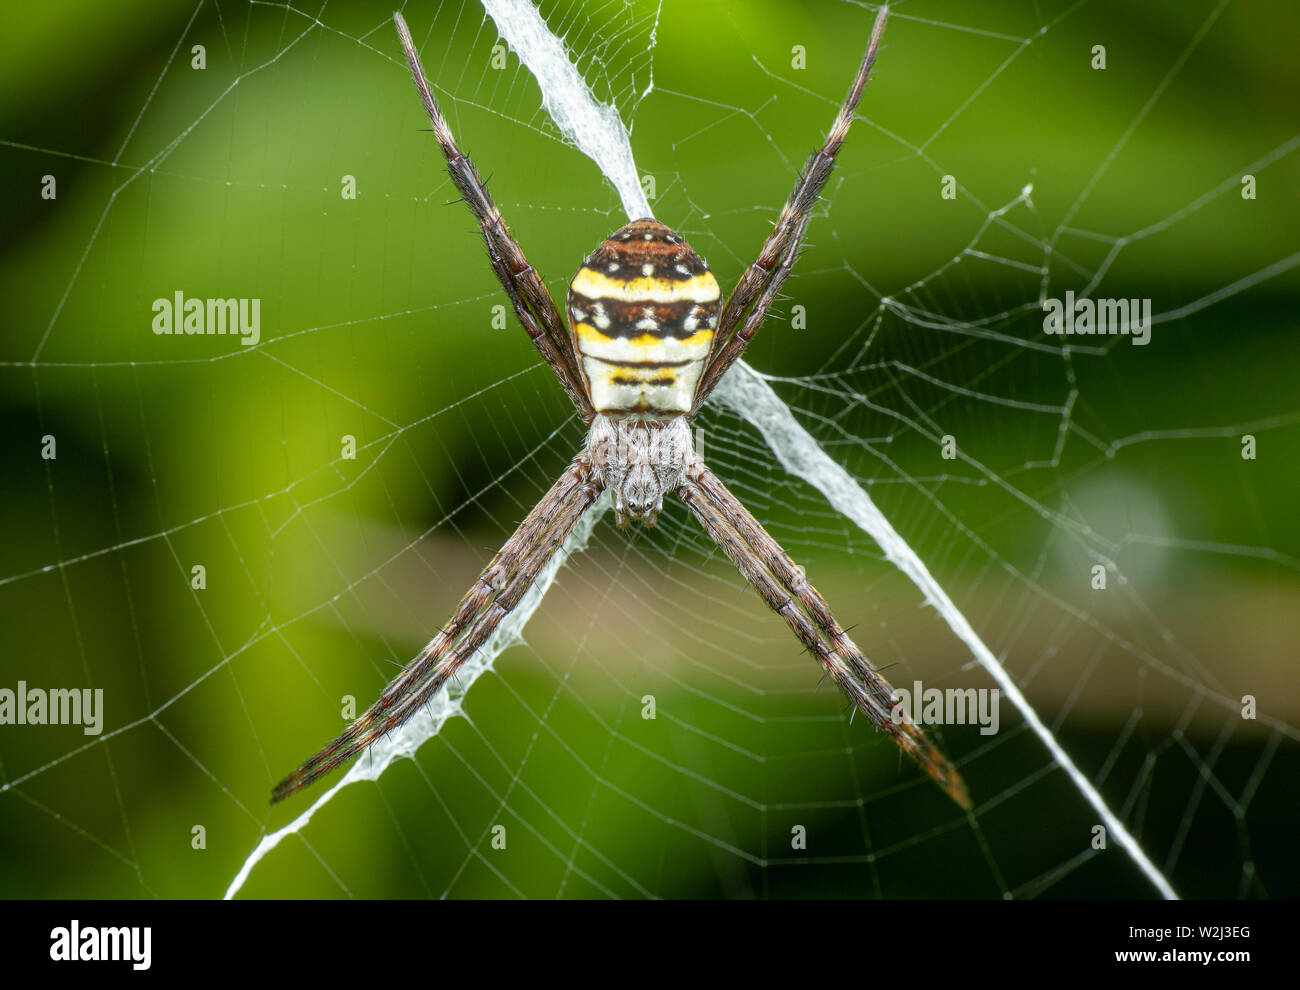 Argiope keyserlingi, la cruz de San Andrés araña, sentado en su web con stabilimentum Foto de stock